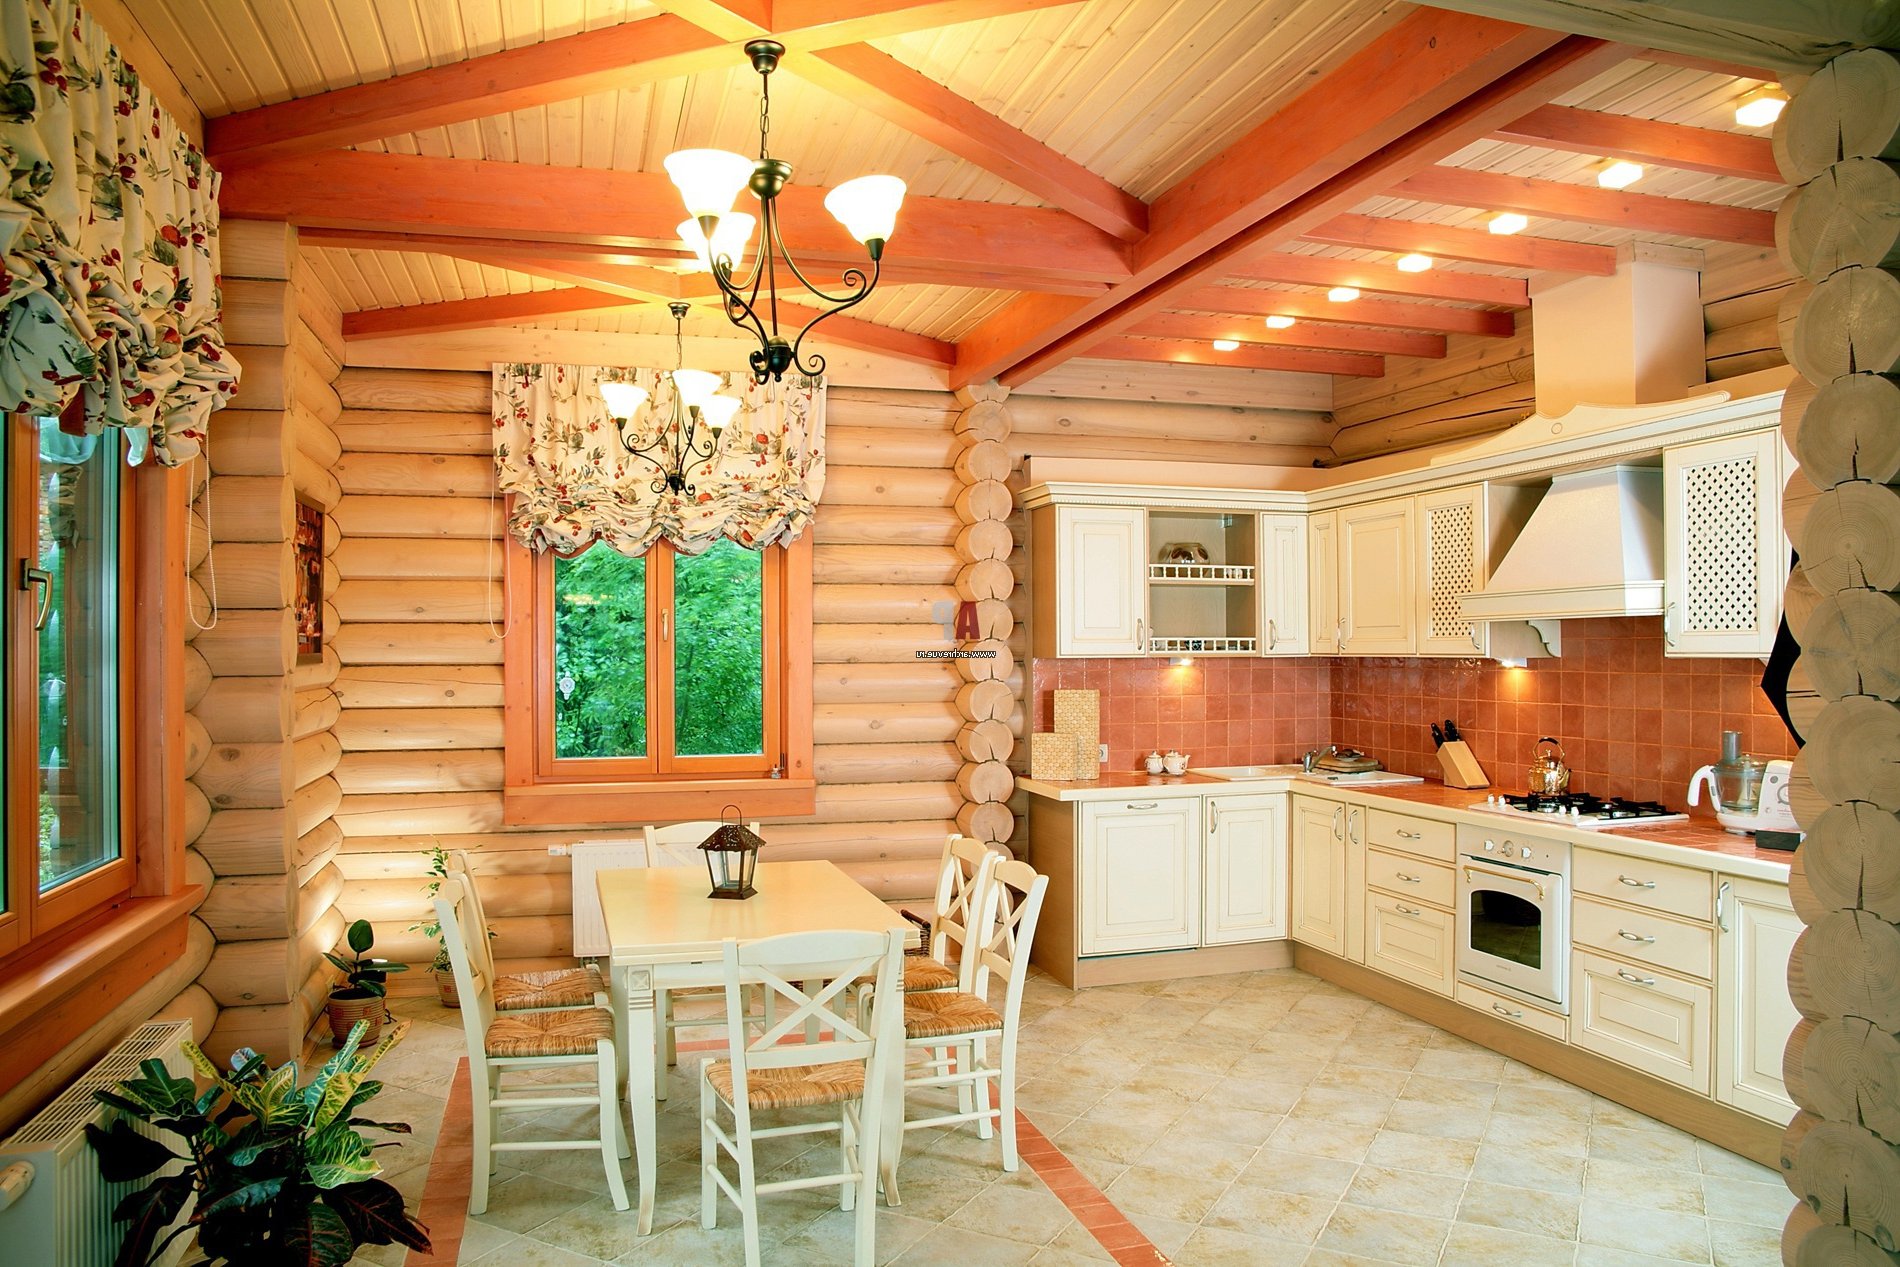 Интерьер кухни деревянного дома фото » Картинки и фотографии дизайна .